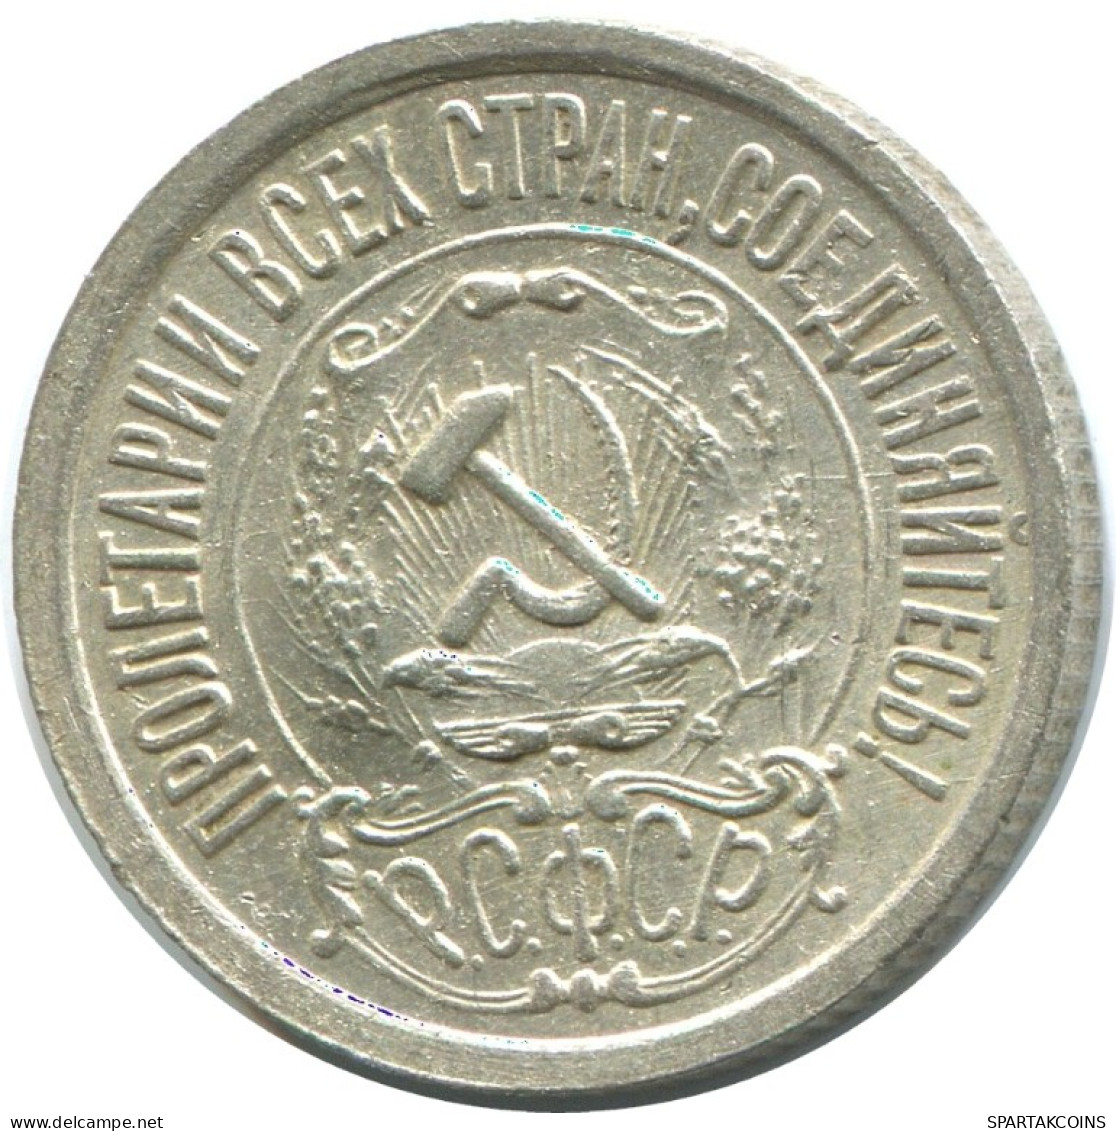 15 KOPEKS 1922 RUSSLAND RUSSIA RSFSR SILBER Münze HIGH GRADE #AF229.4.D.A - Rusia